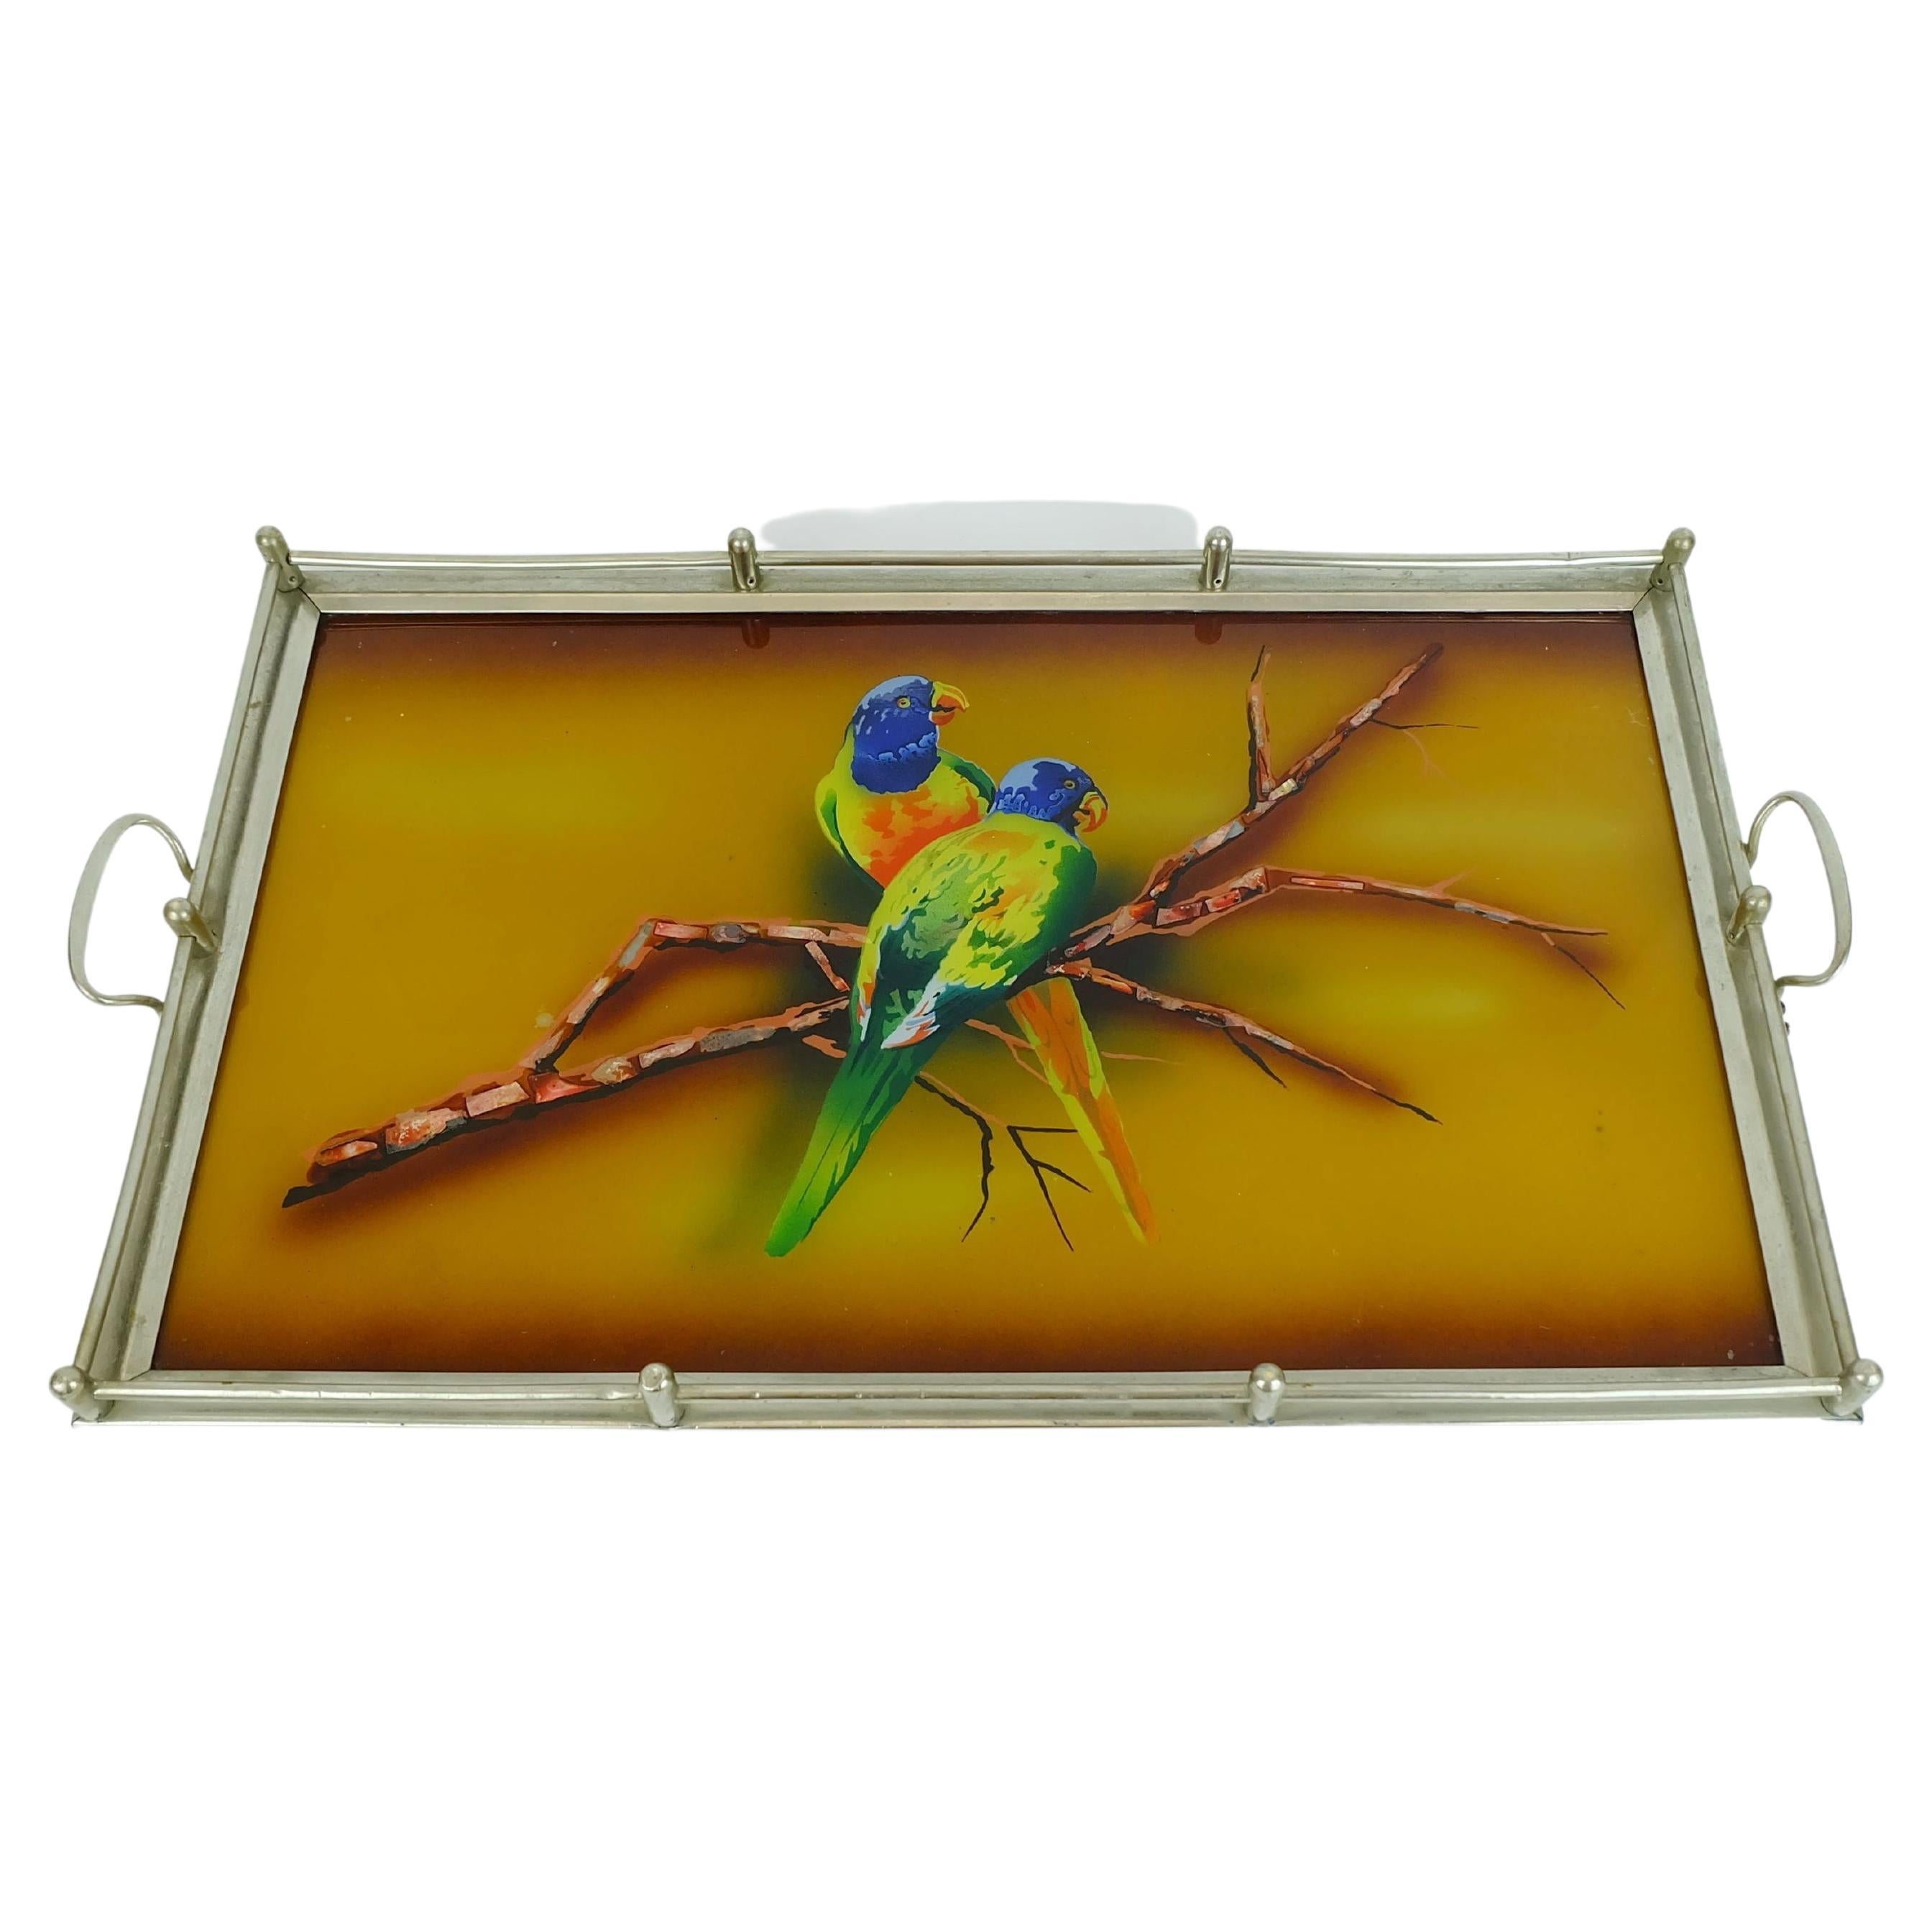 Large Art Déco Tray Glass Metal Parrot Motif, 1920s/1930s For Sale